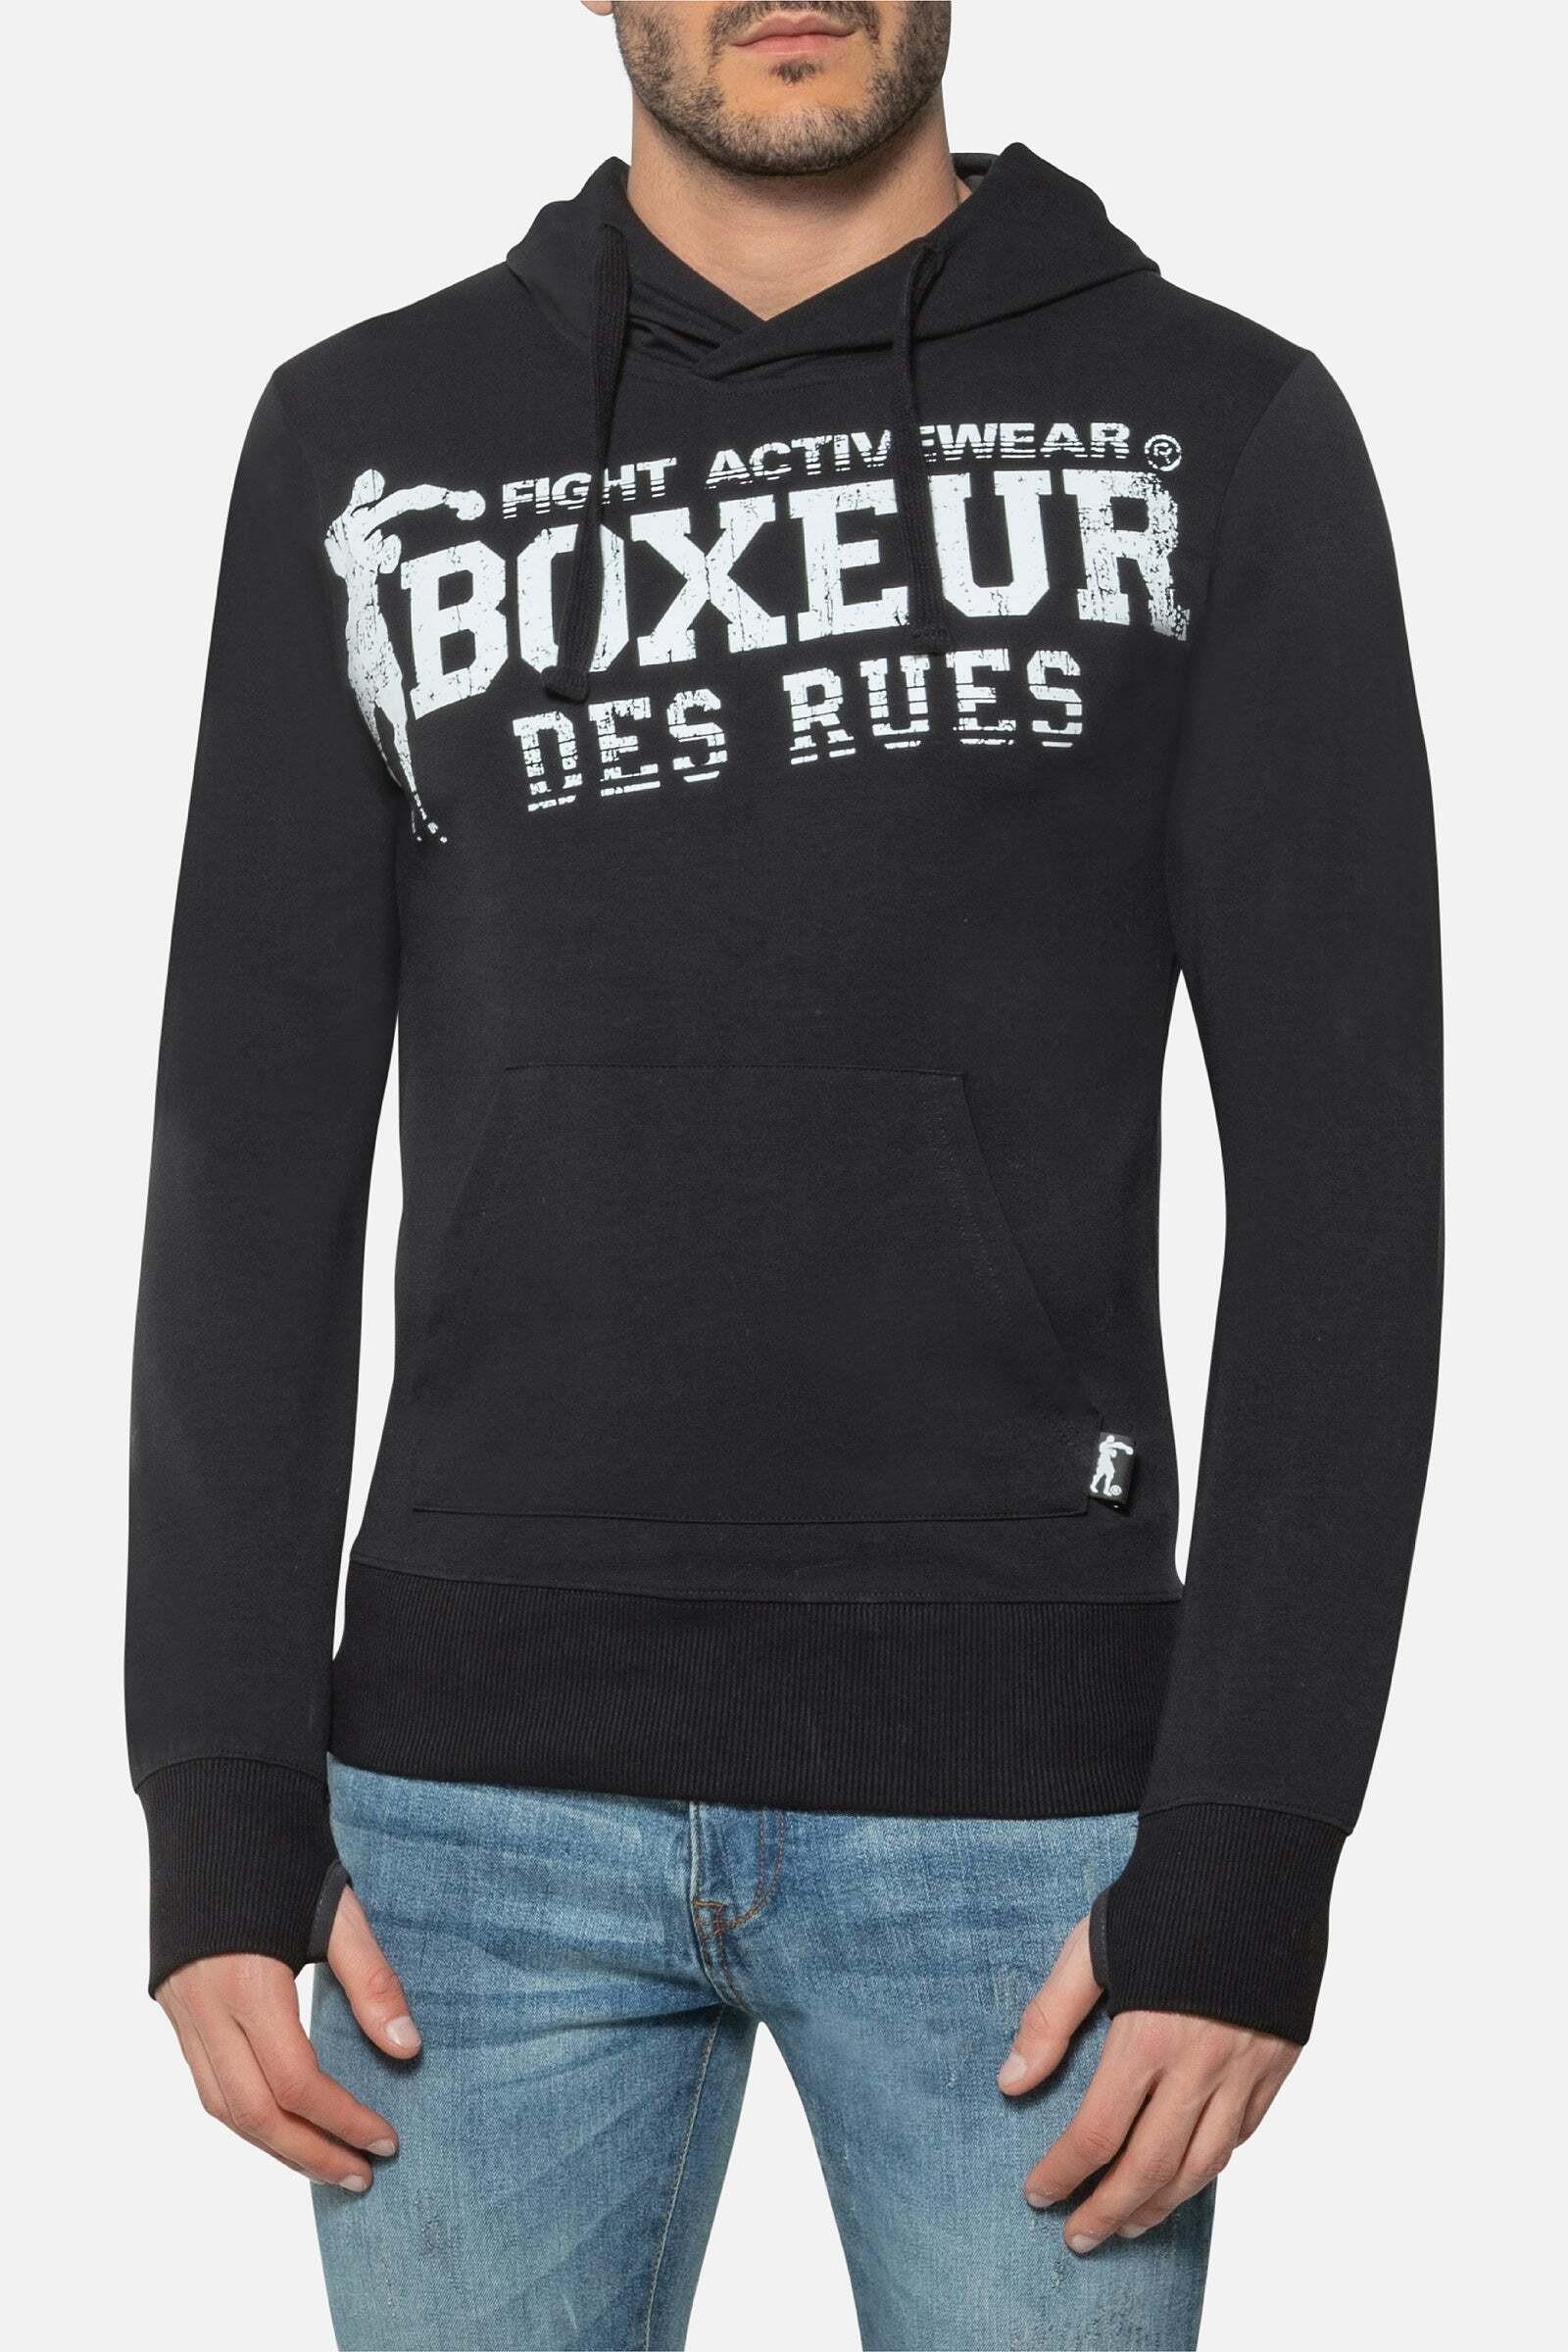 Kapuzenpullover Hooded Sweatshirt With Thumb Openings Herren Schwarz M von BOXEUR DES RUES